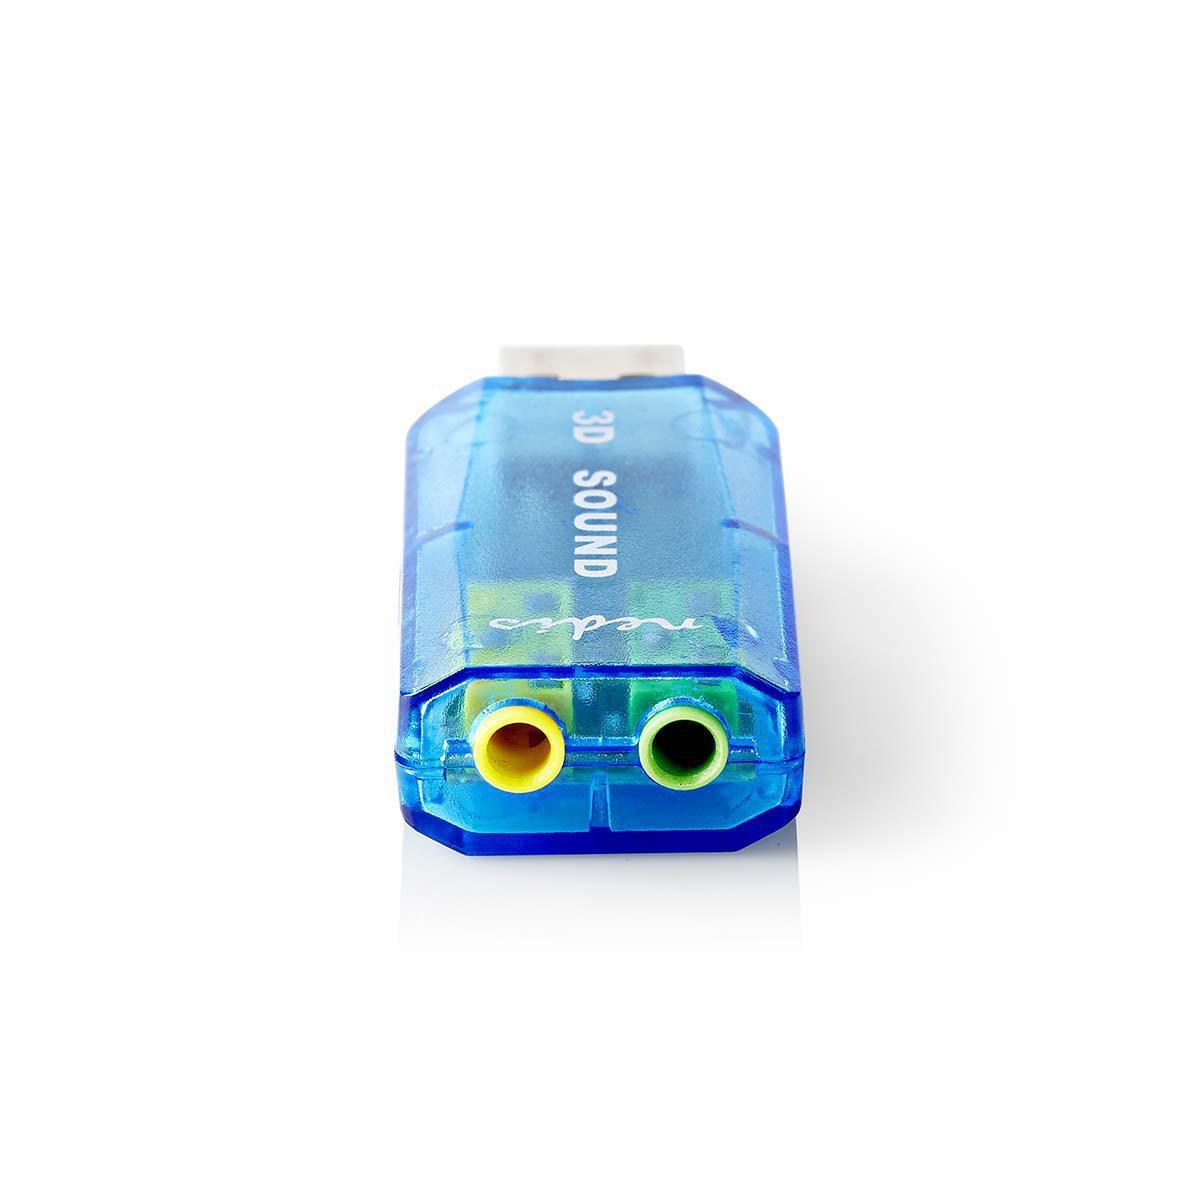 Nedis  Soundkarte | 5.1 | USB 2.0 | Mikrofonanschluss: 1x 3,5 mm | Headsetanschluss: 3,5 mm Male 